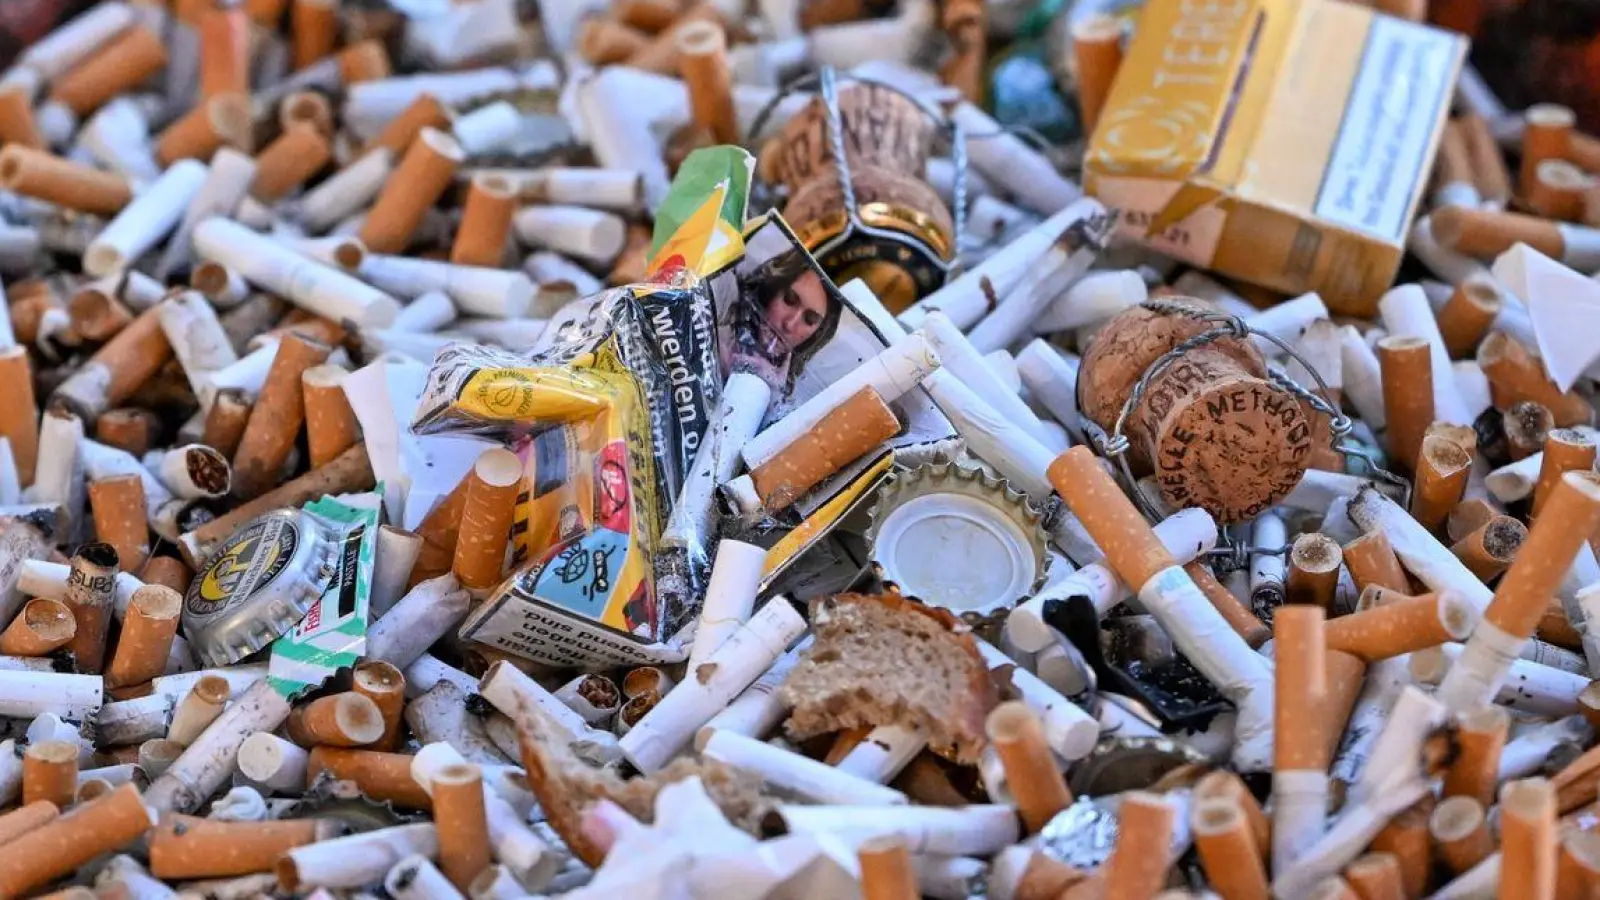 Eine Schale voller Kippen und Zigarettenschachteln. (Foto: Jens Kalaene/dpa)